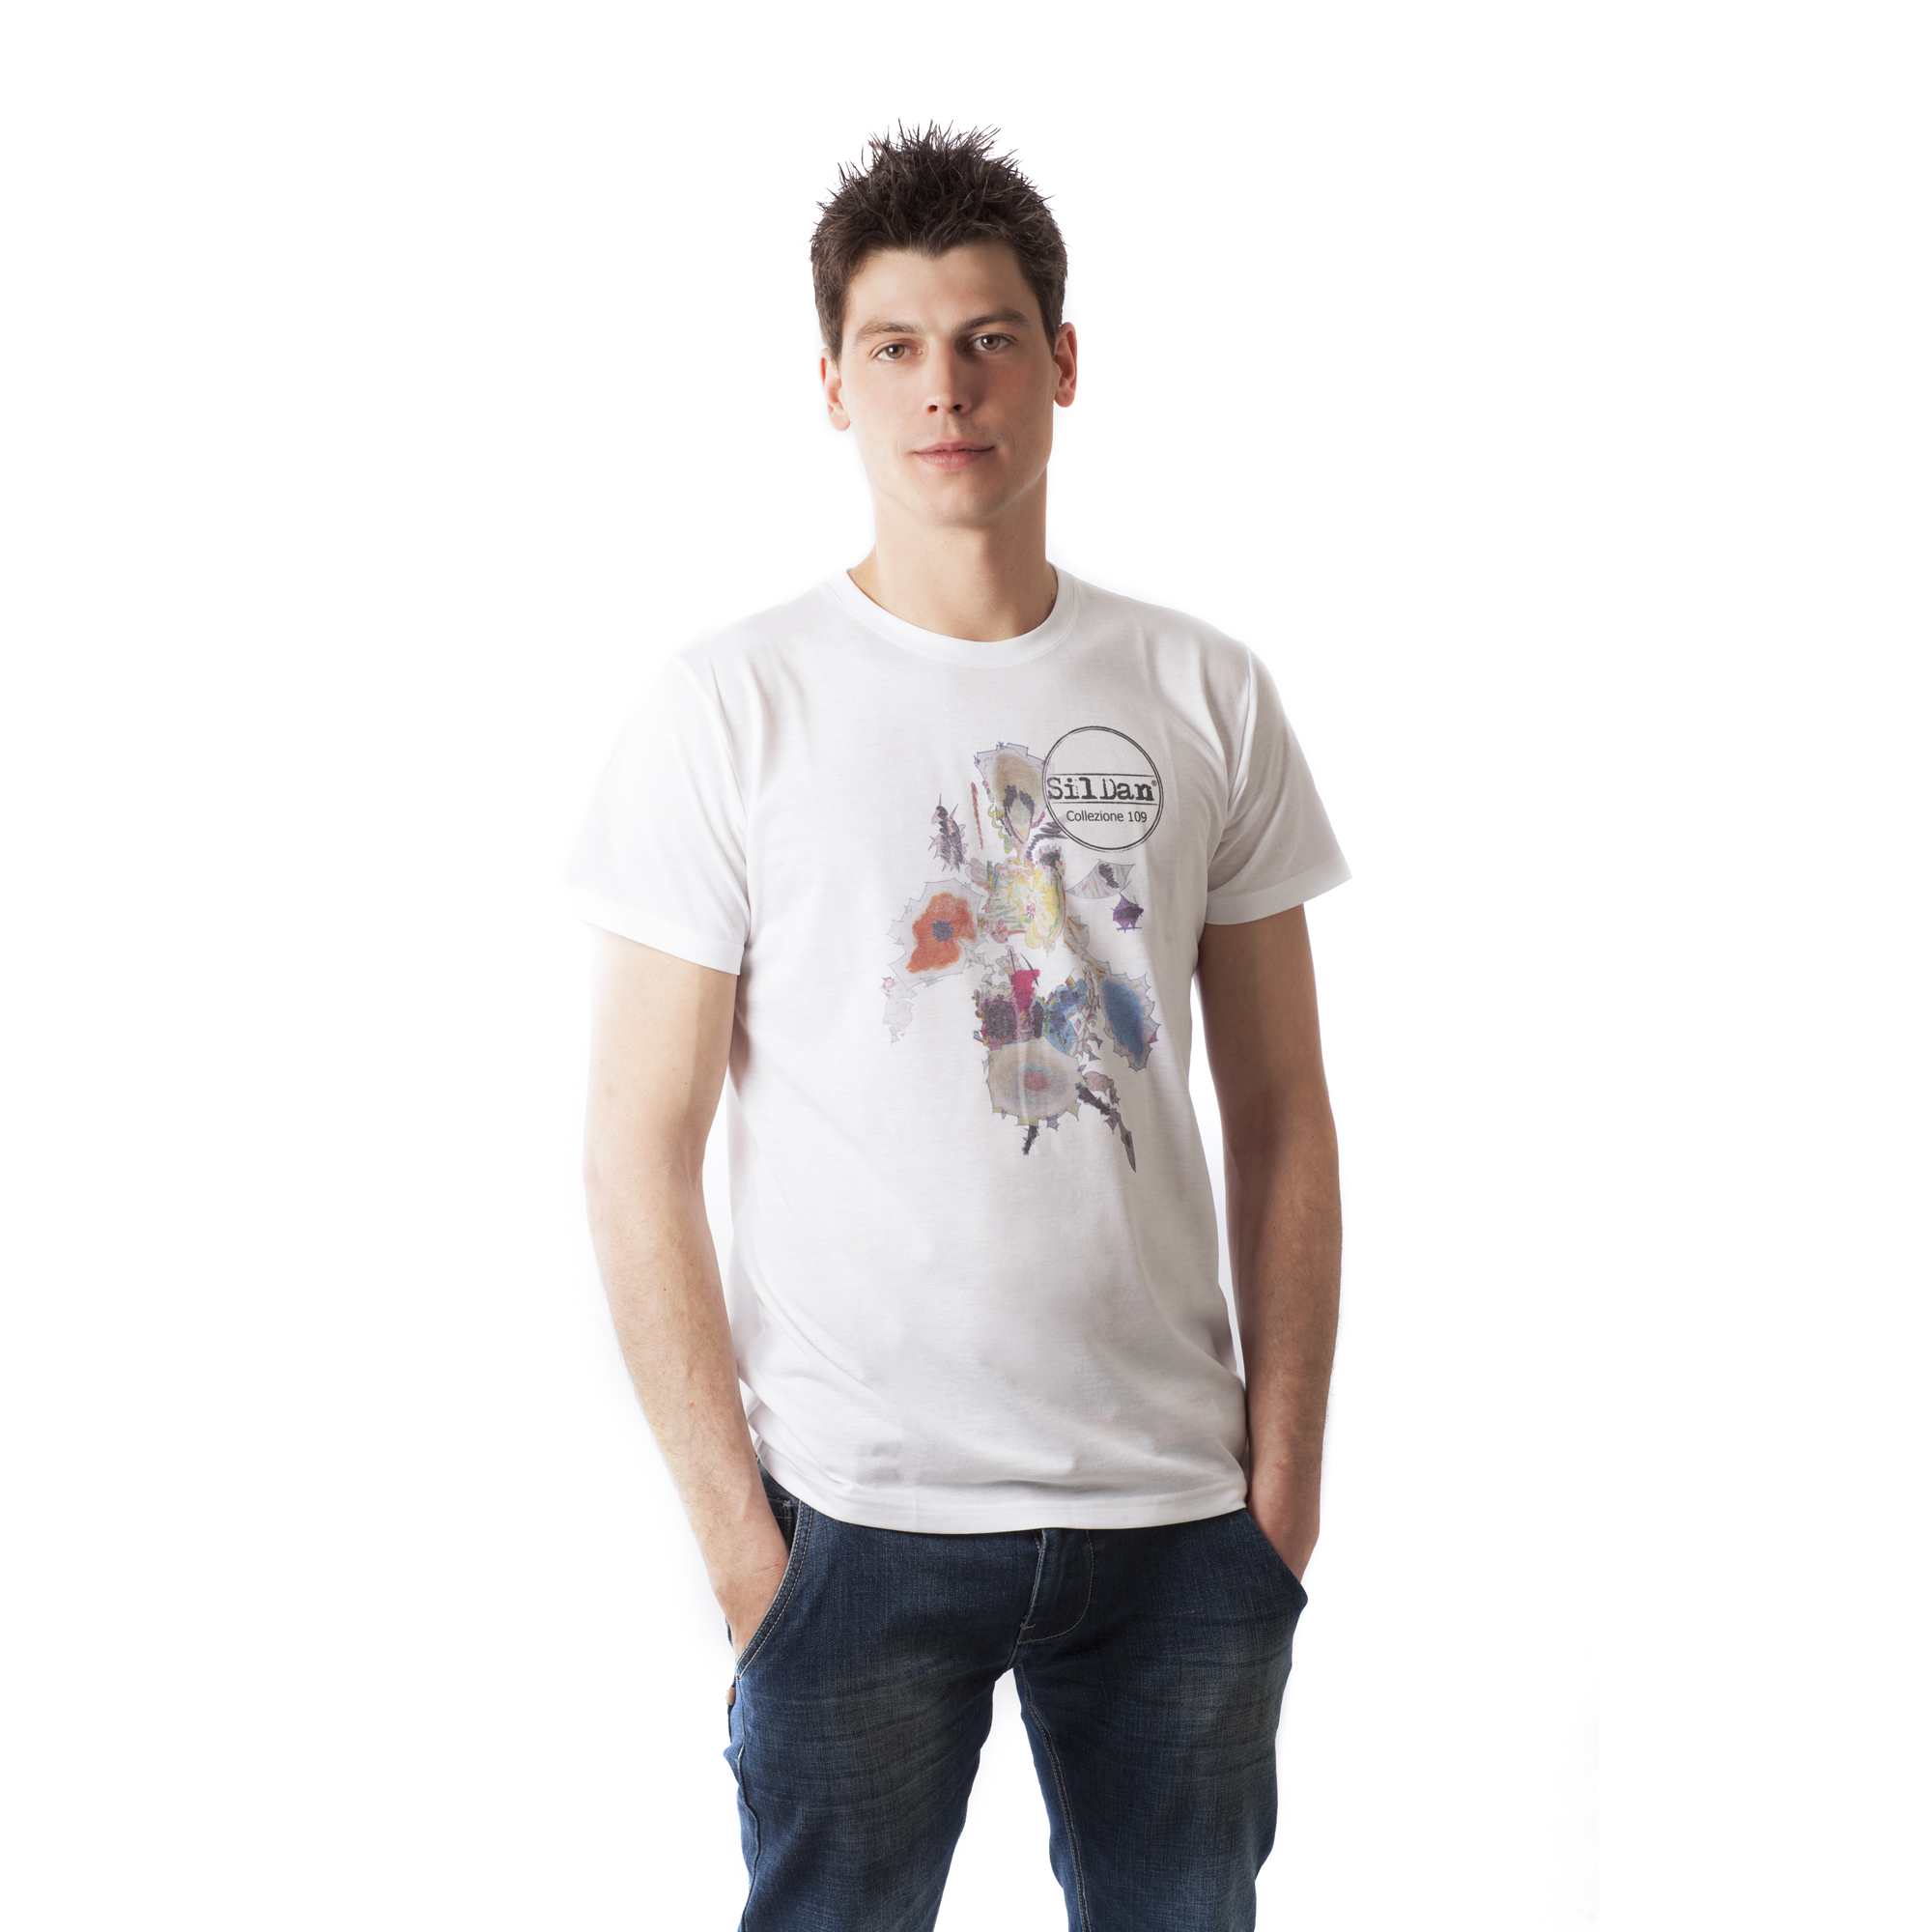 Sil Dan Italian Fashion t-shirt collection for boy 109